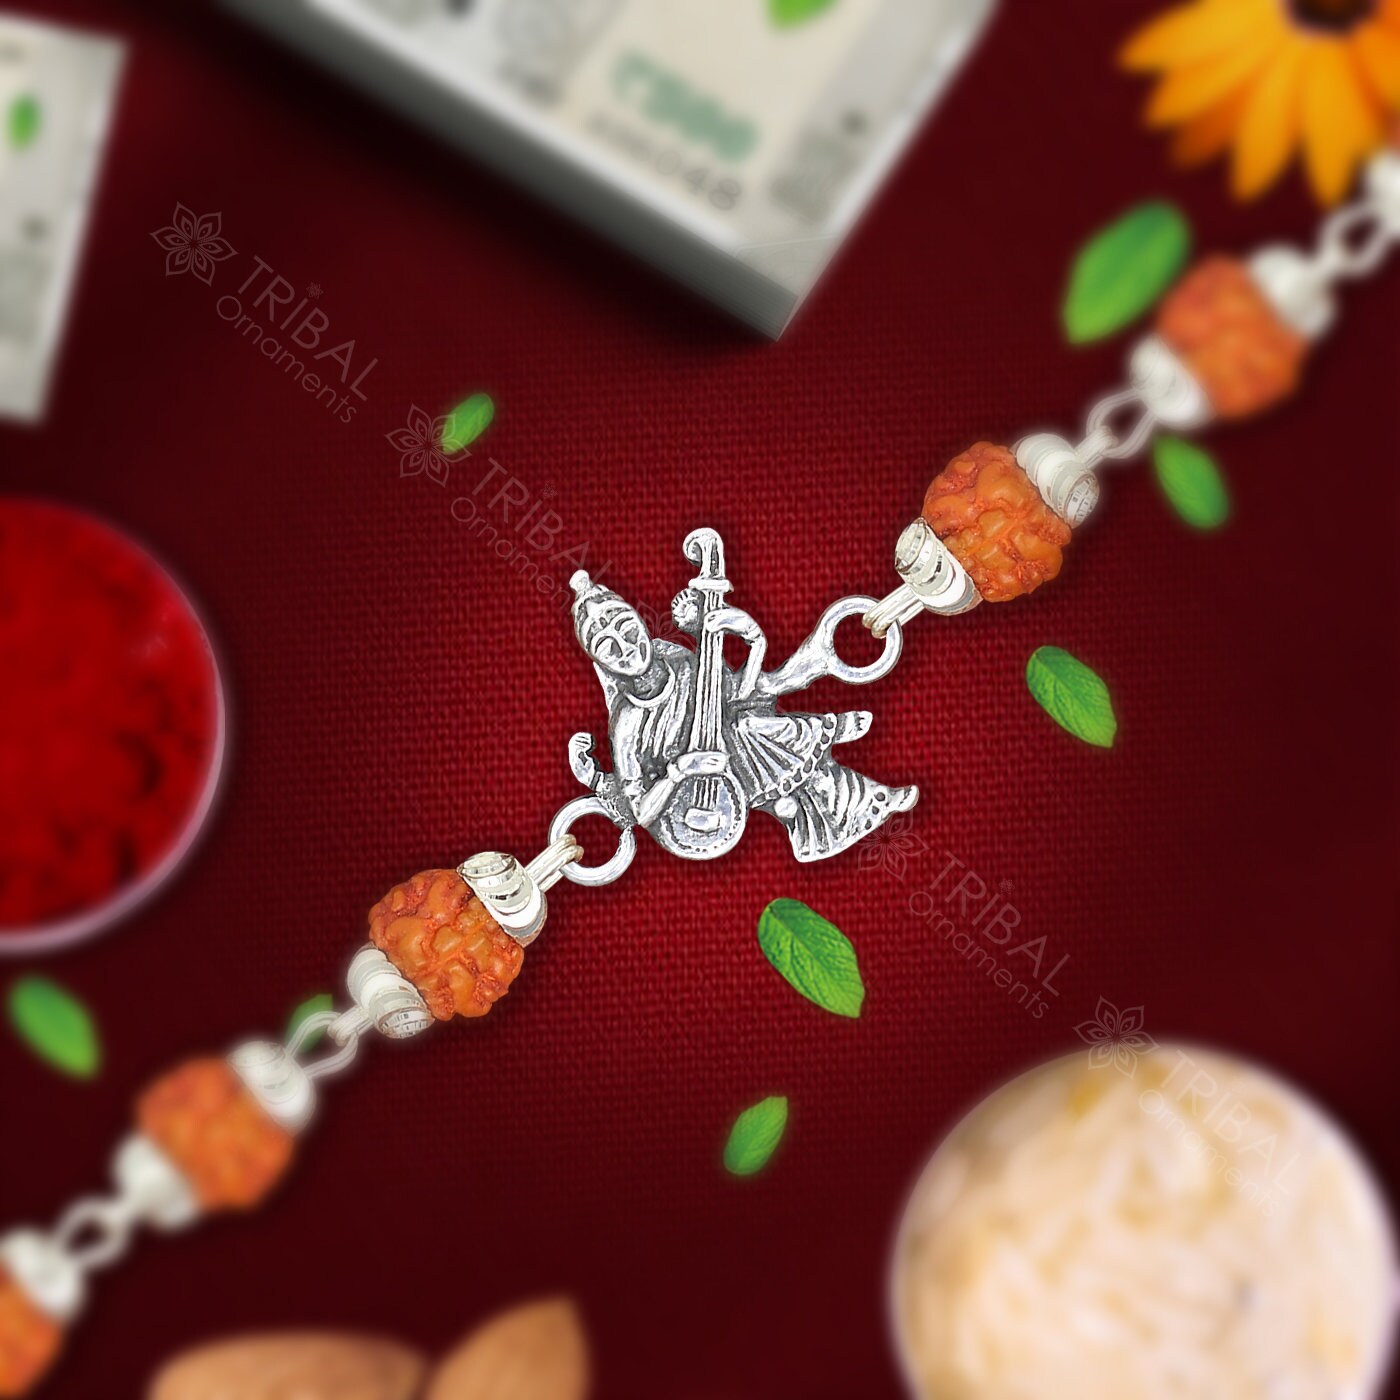 Amazing Goddess Saraswathi design 925 sterling silver Rakhi bracelet in rudraksh/black basil/white basil and silver beaded chain rk279 - TRIBAL ORNAMENTS